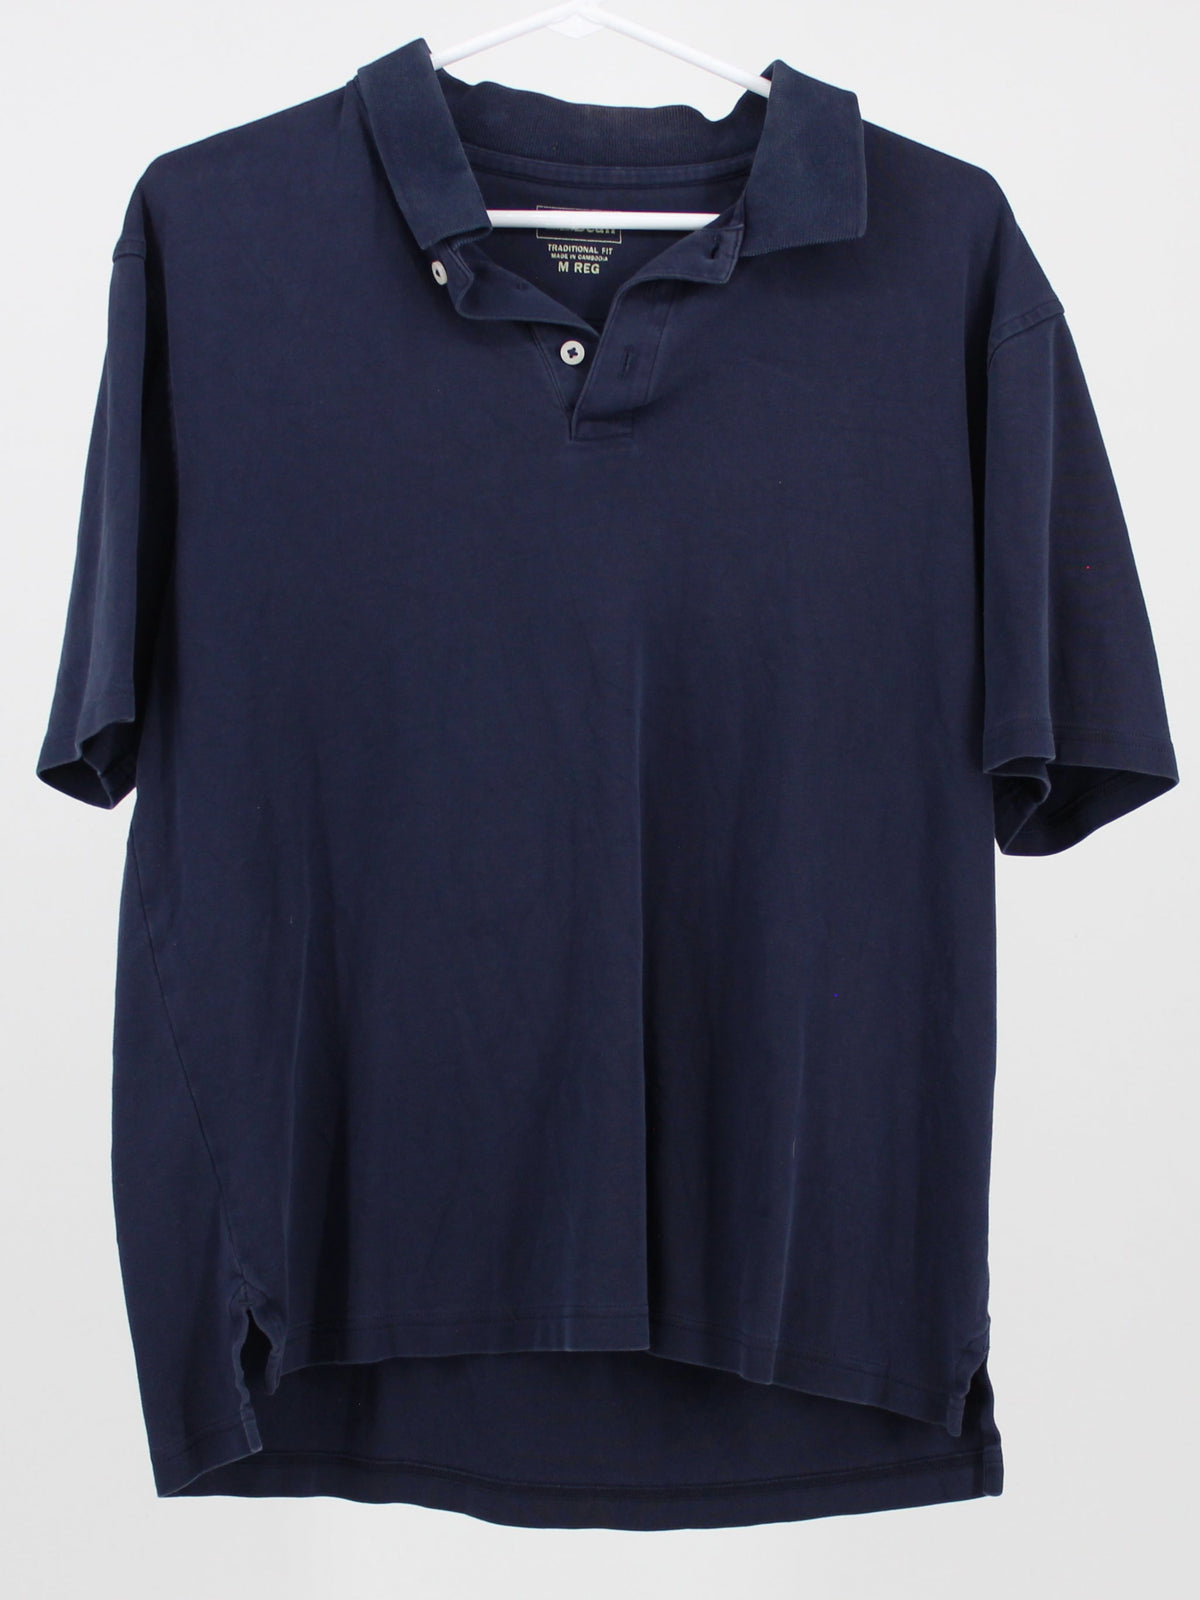 L.L. Bean Navy Blue Golf Shirt